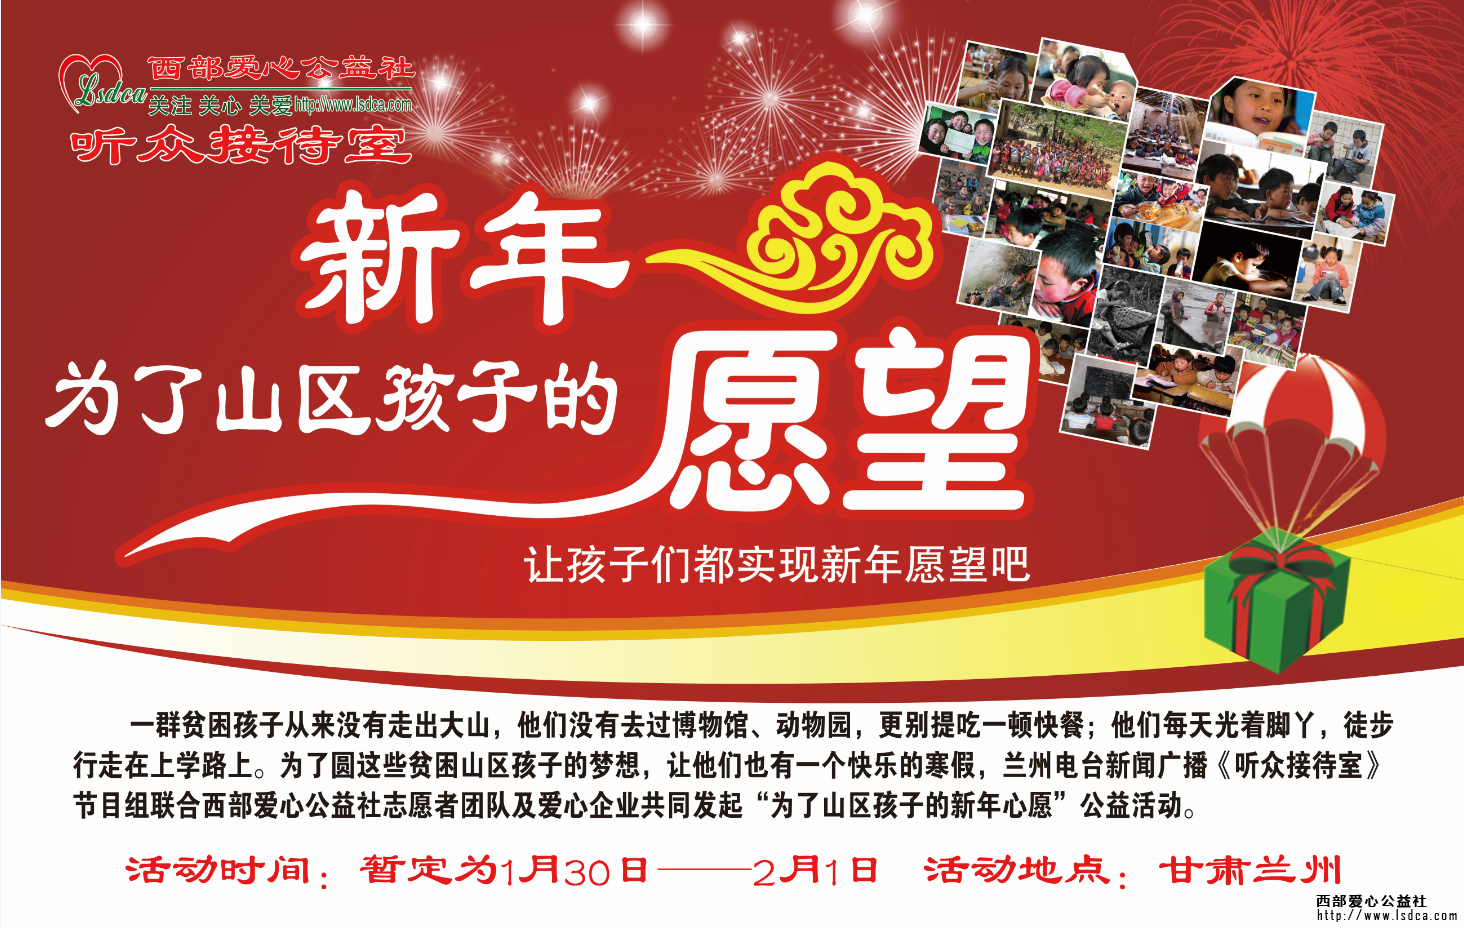 【新年心愿】15004期甘肃站为了山区孩子新年心愿活动活动